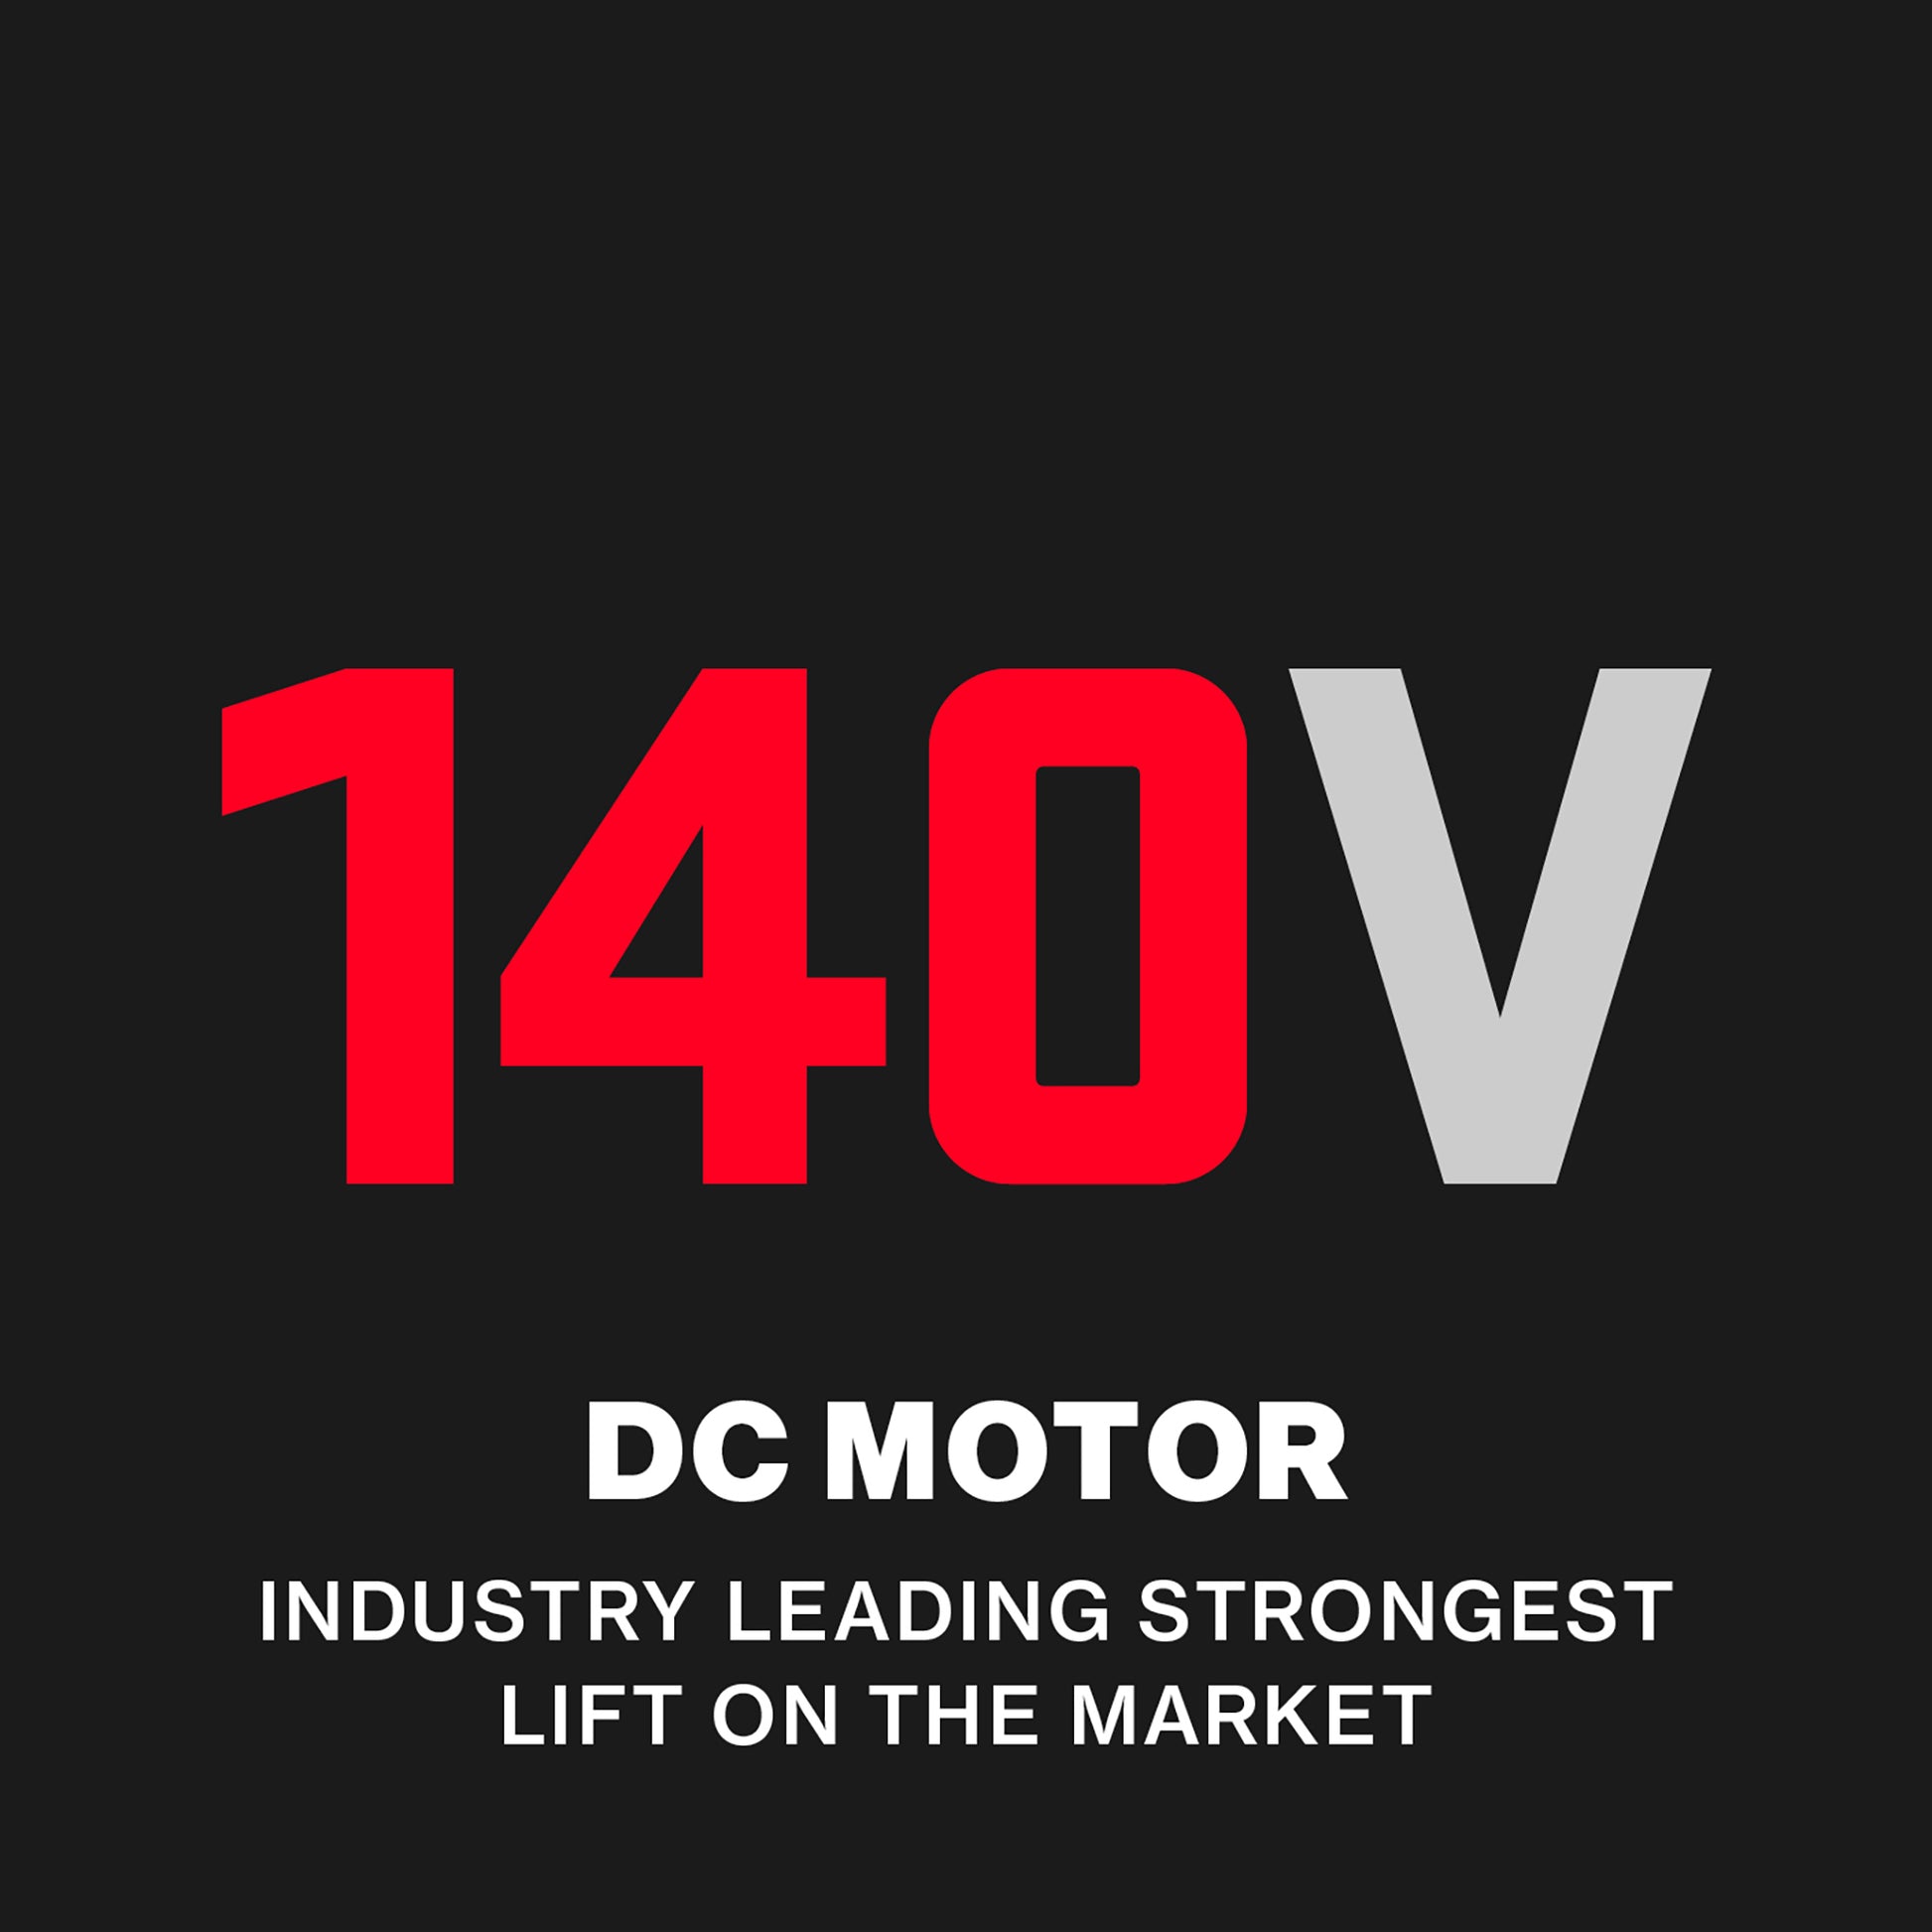 140V DC Motor industry leading garage door opener motor 